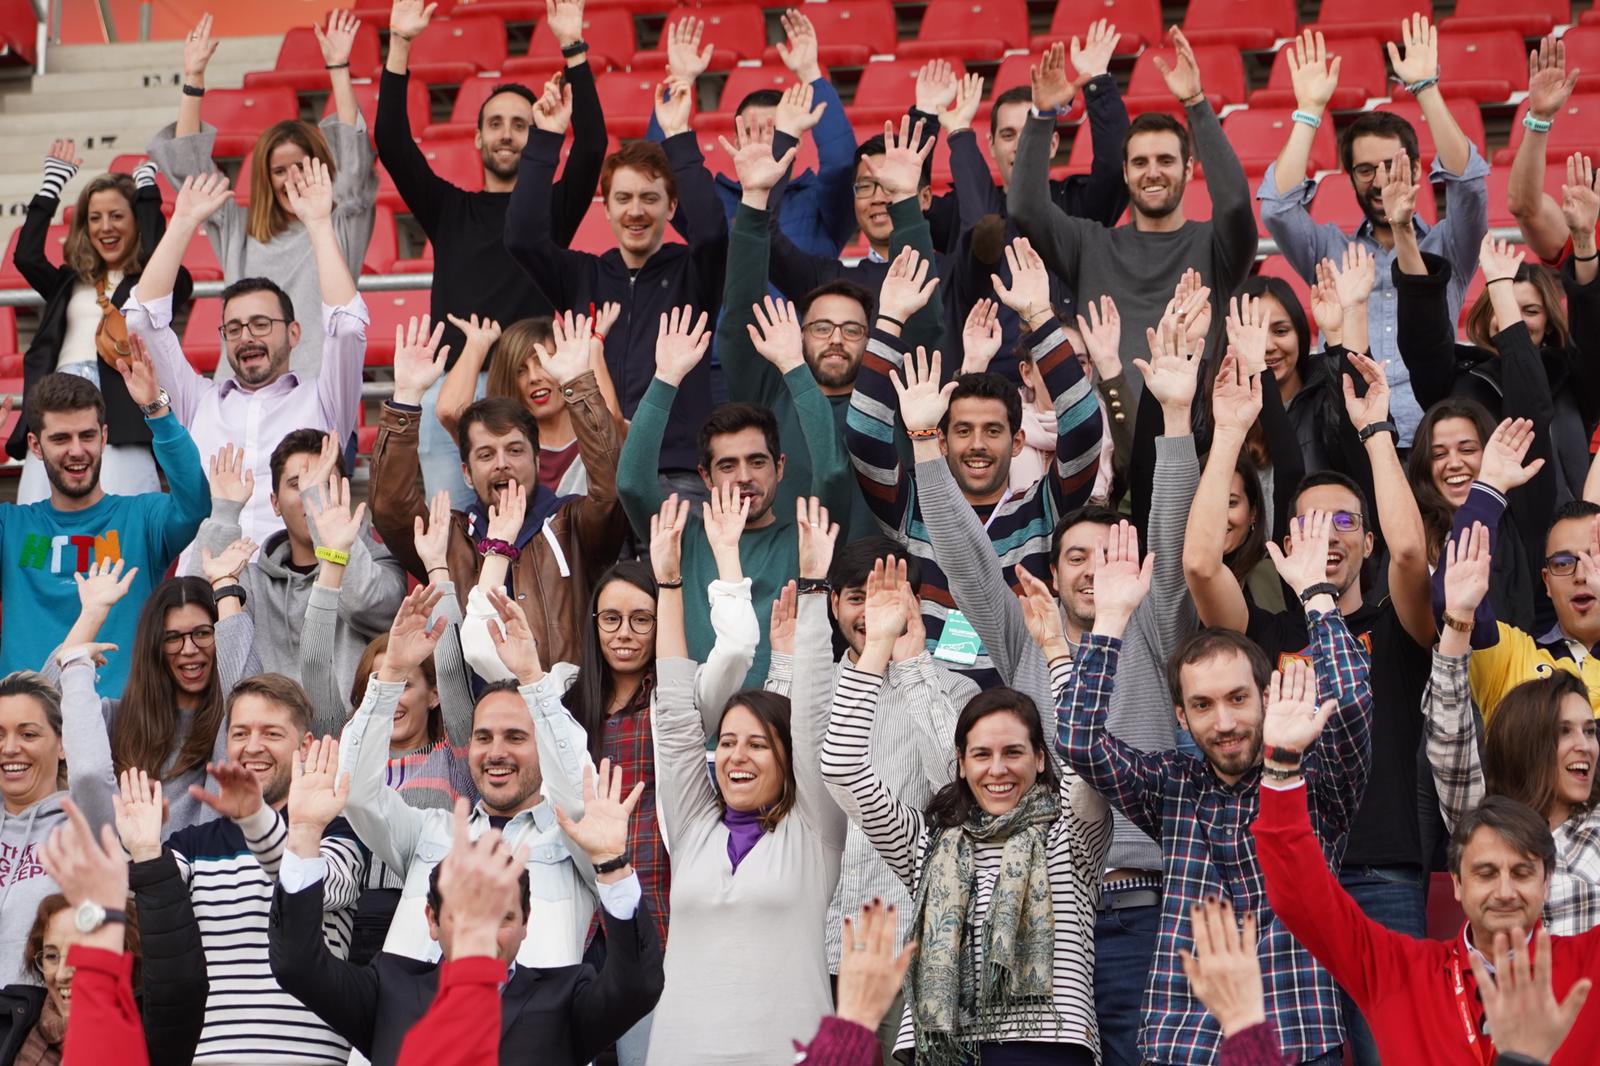 Los voluntarios para las jornadas de LaLiga Genuine en Sevilla 